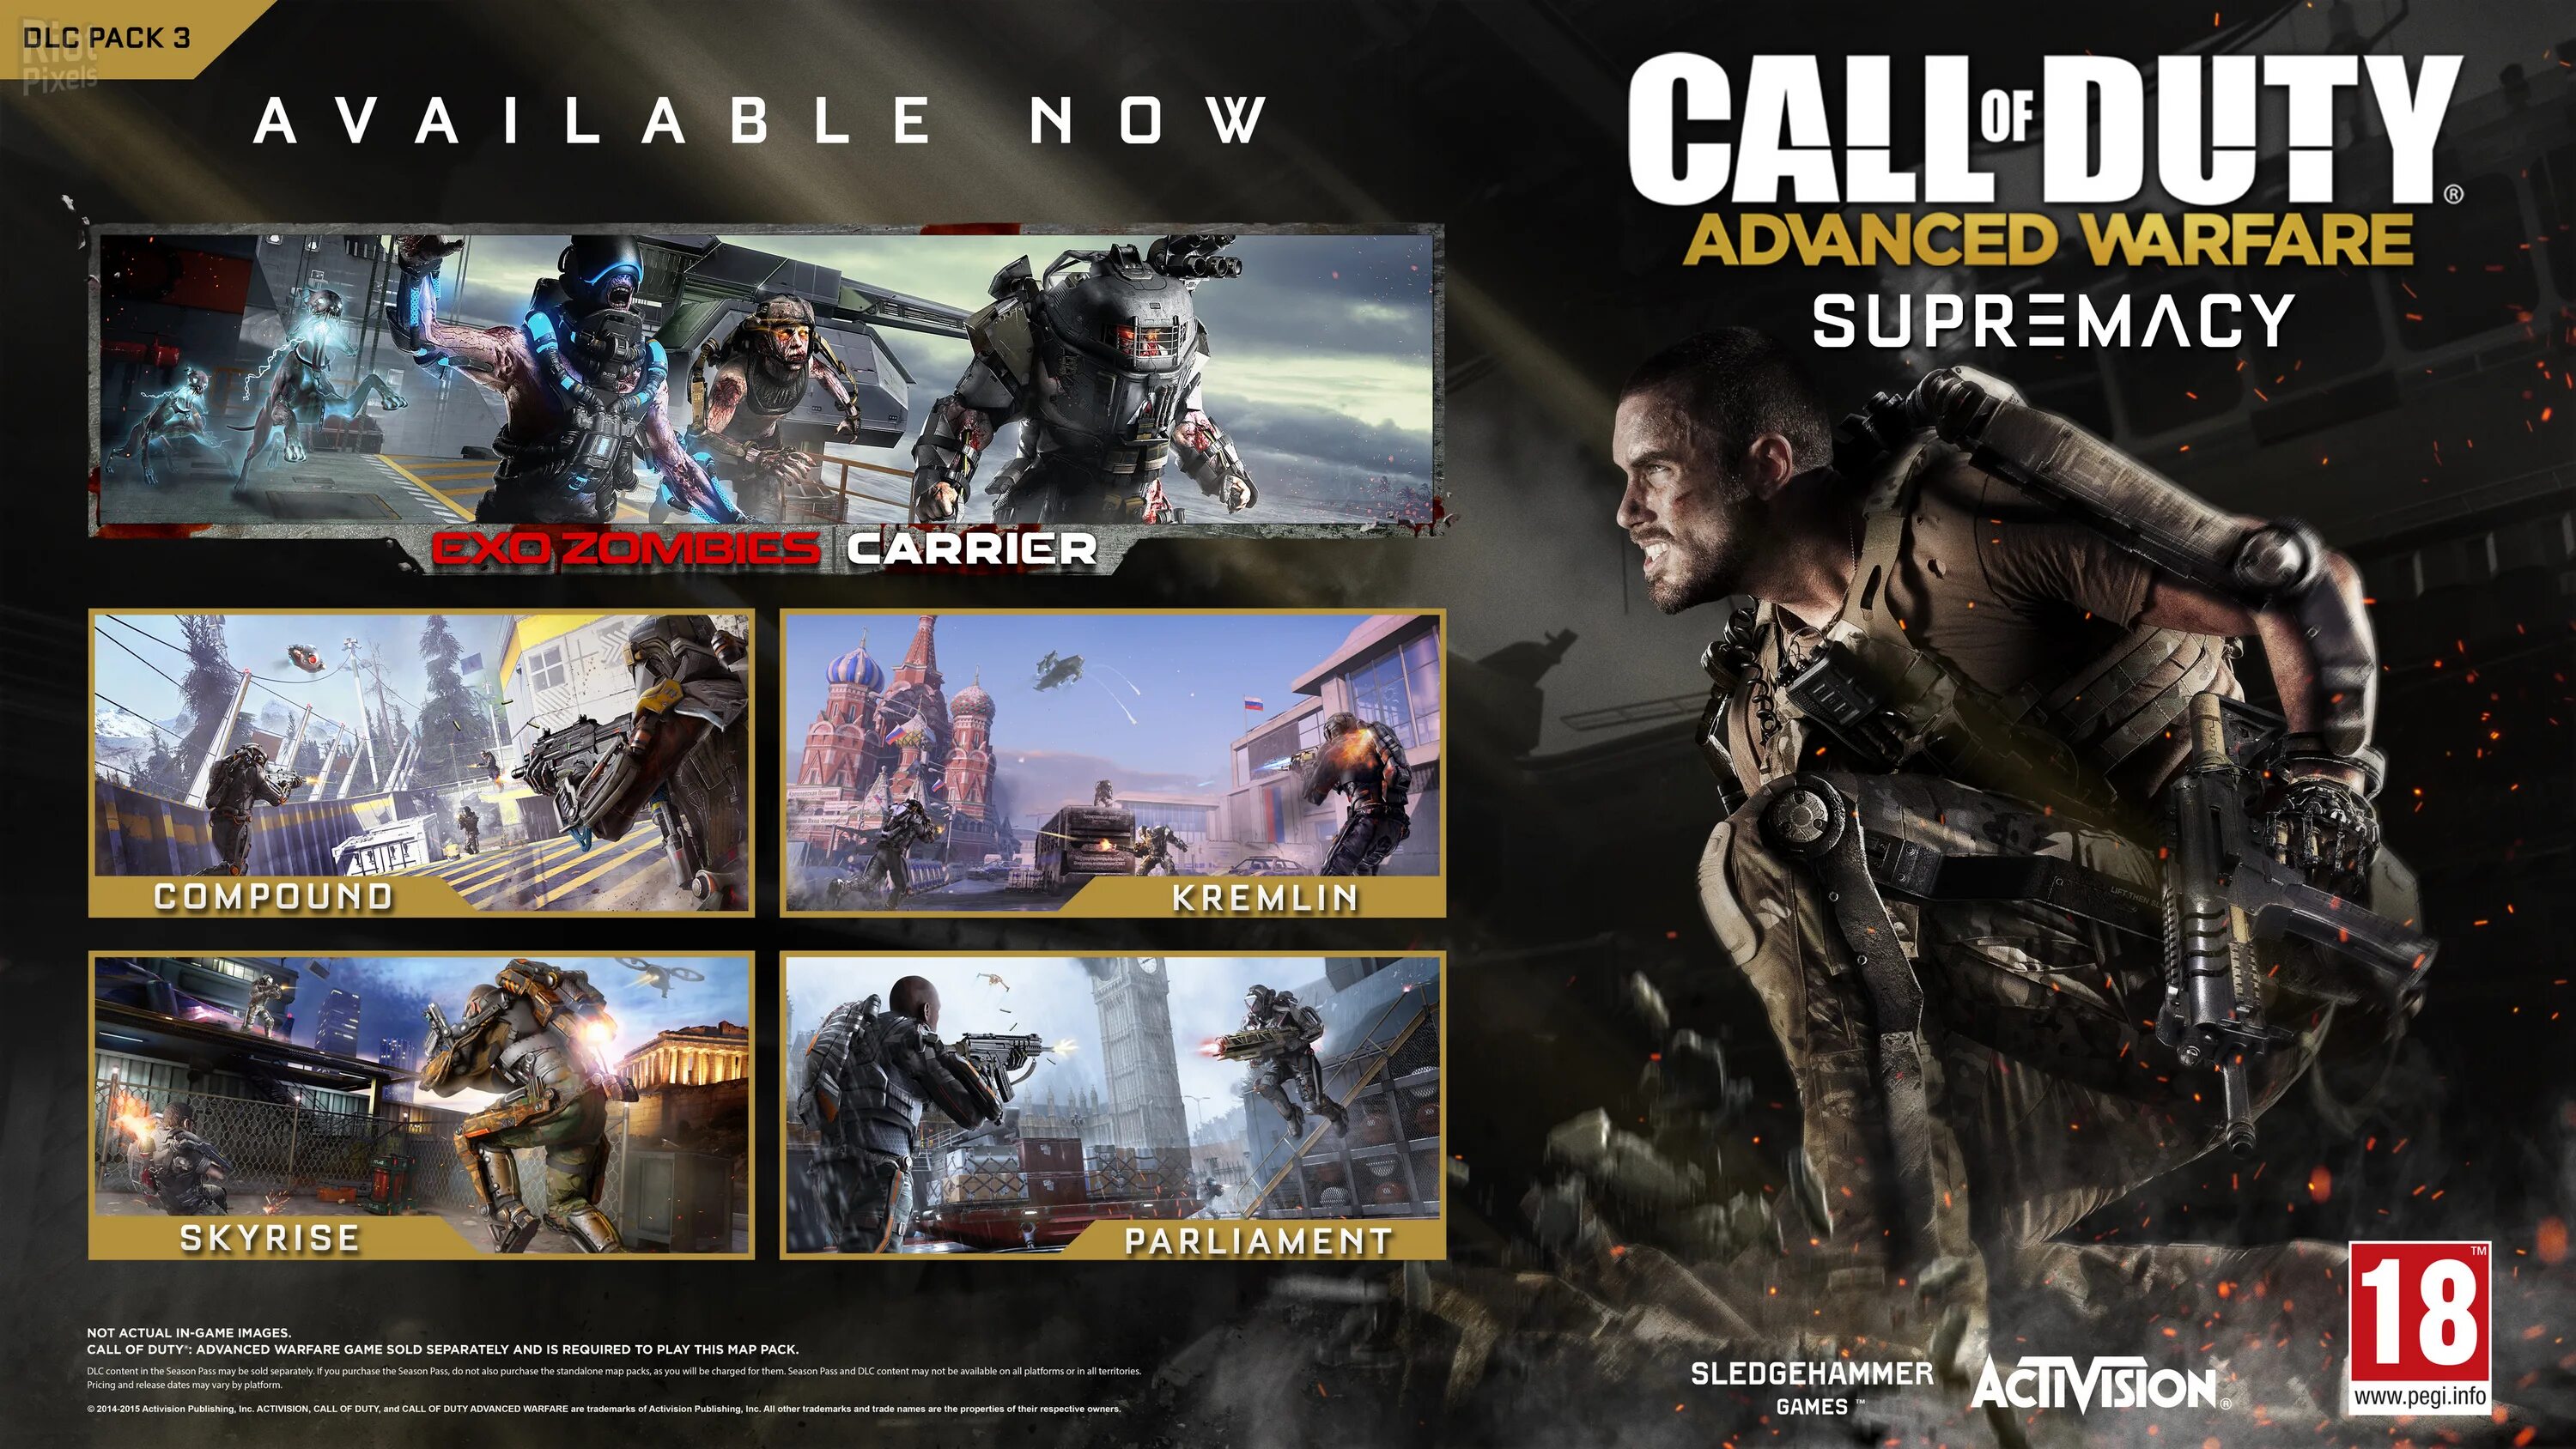 Call of Duty Advanced на плейстейшен 3. Call of Duty Advanced Warfare обложка. Call of Duty Advanced Warfare Xbox 360. Call of Duty: Advanced Warfare - Supremacy.